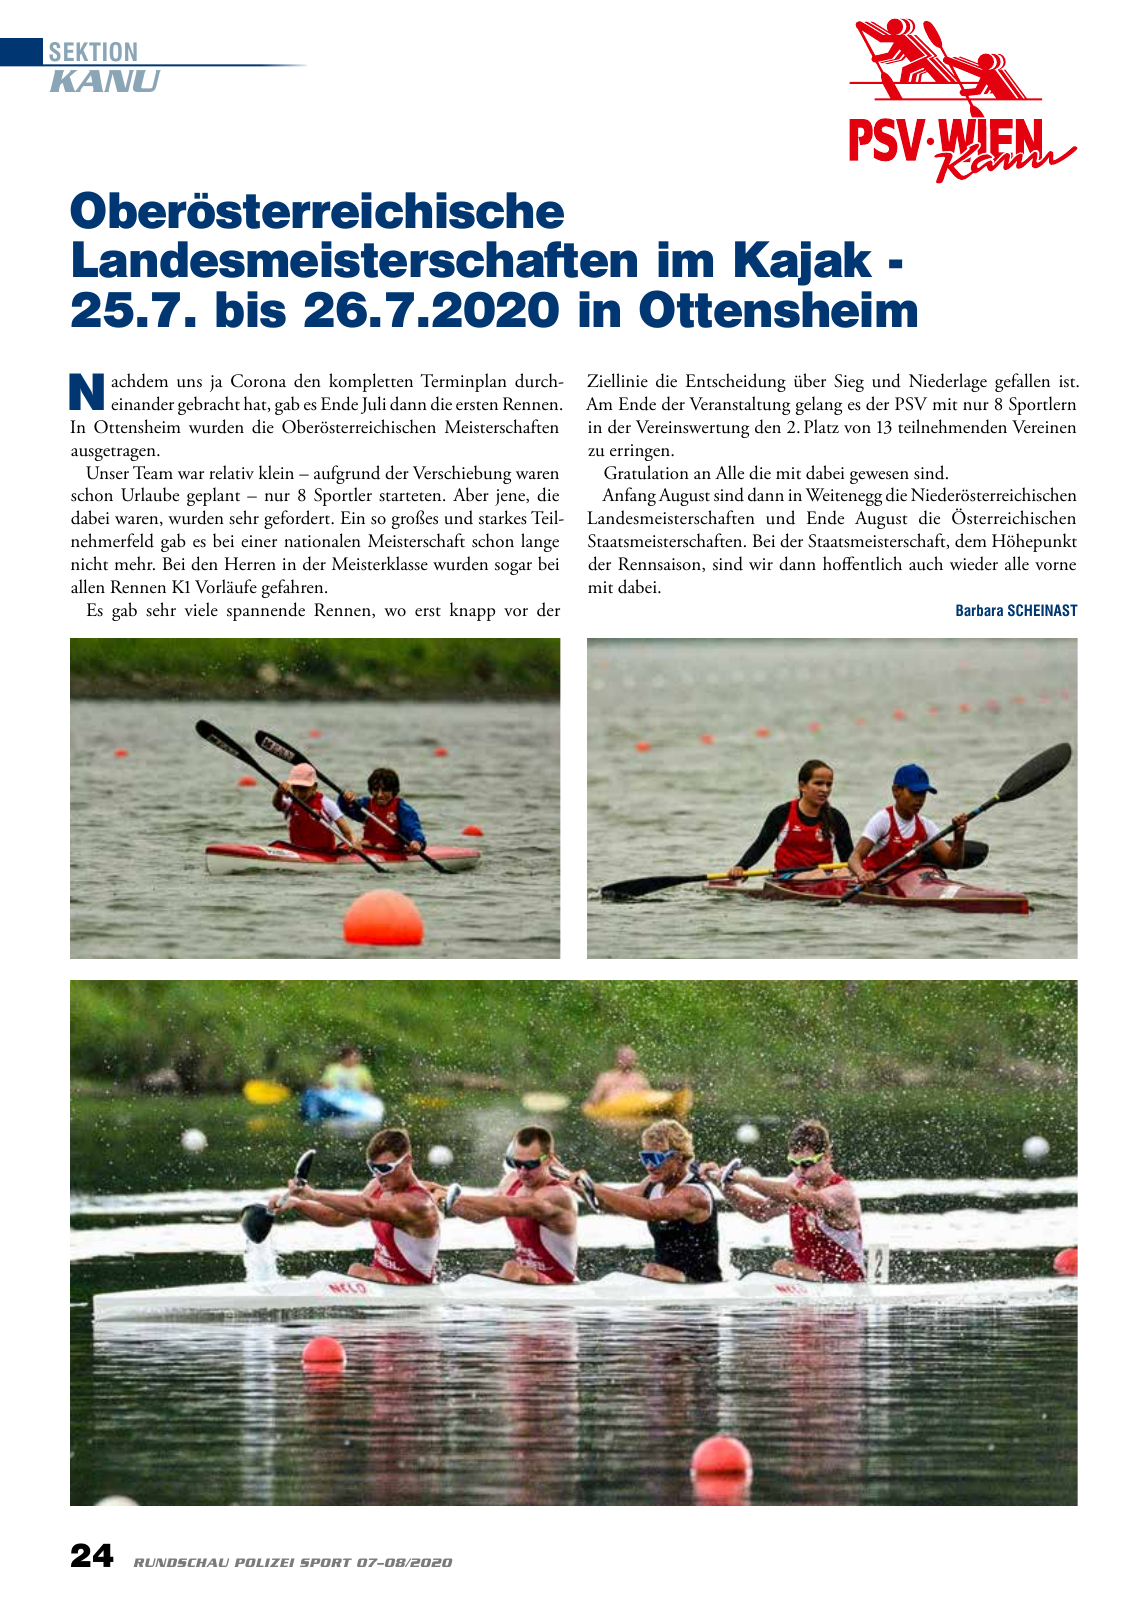 Vorschau Rundschau Polizei Sport 07-08/2020 Seite 24